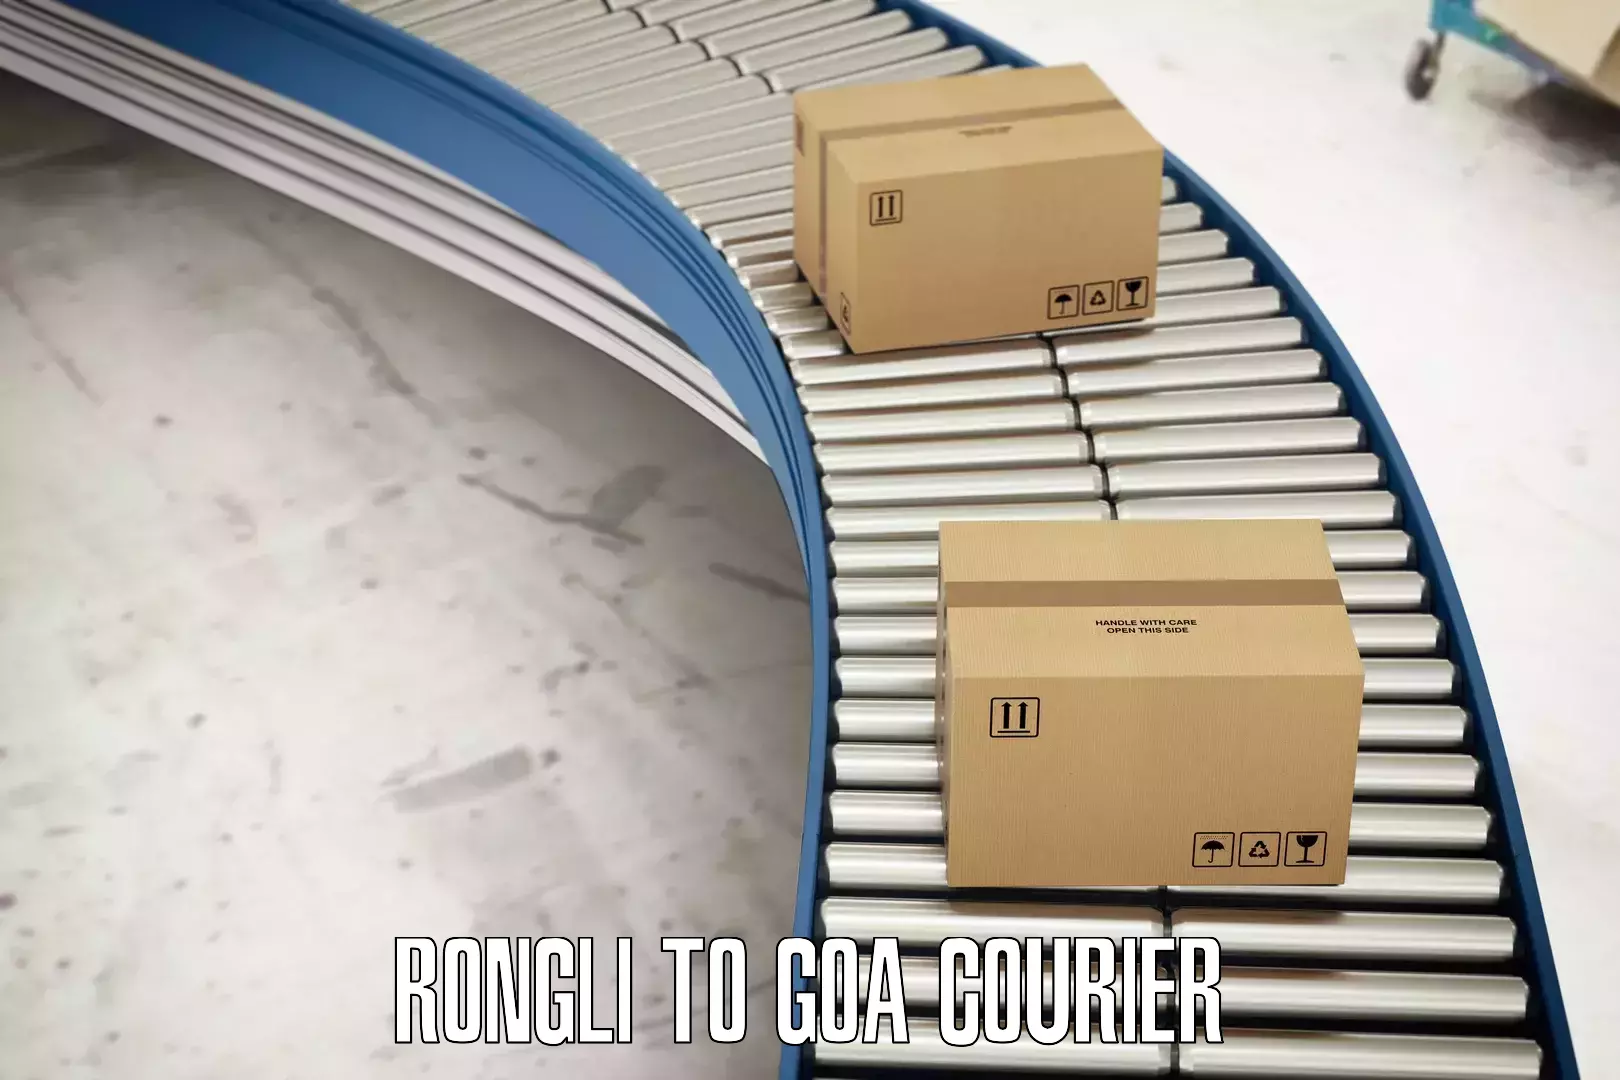 On-demand shipping options Rongli to Bicholim